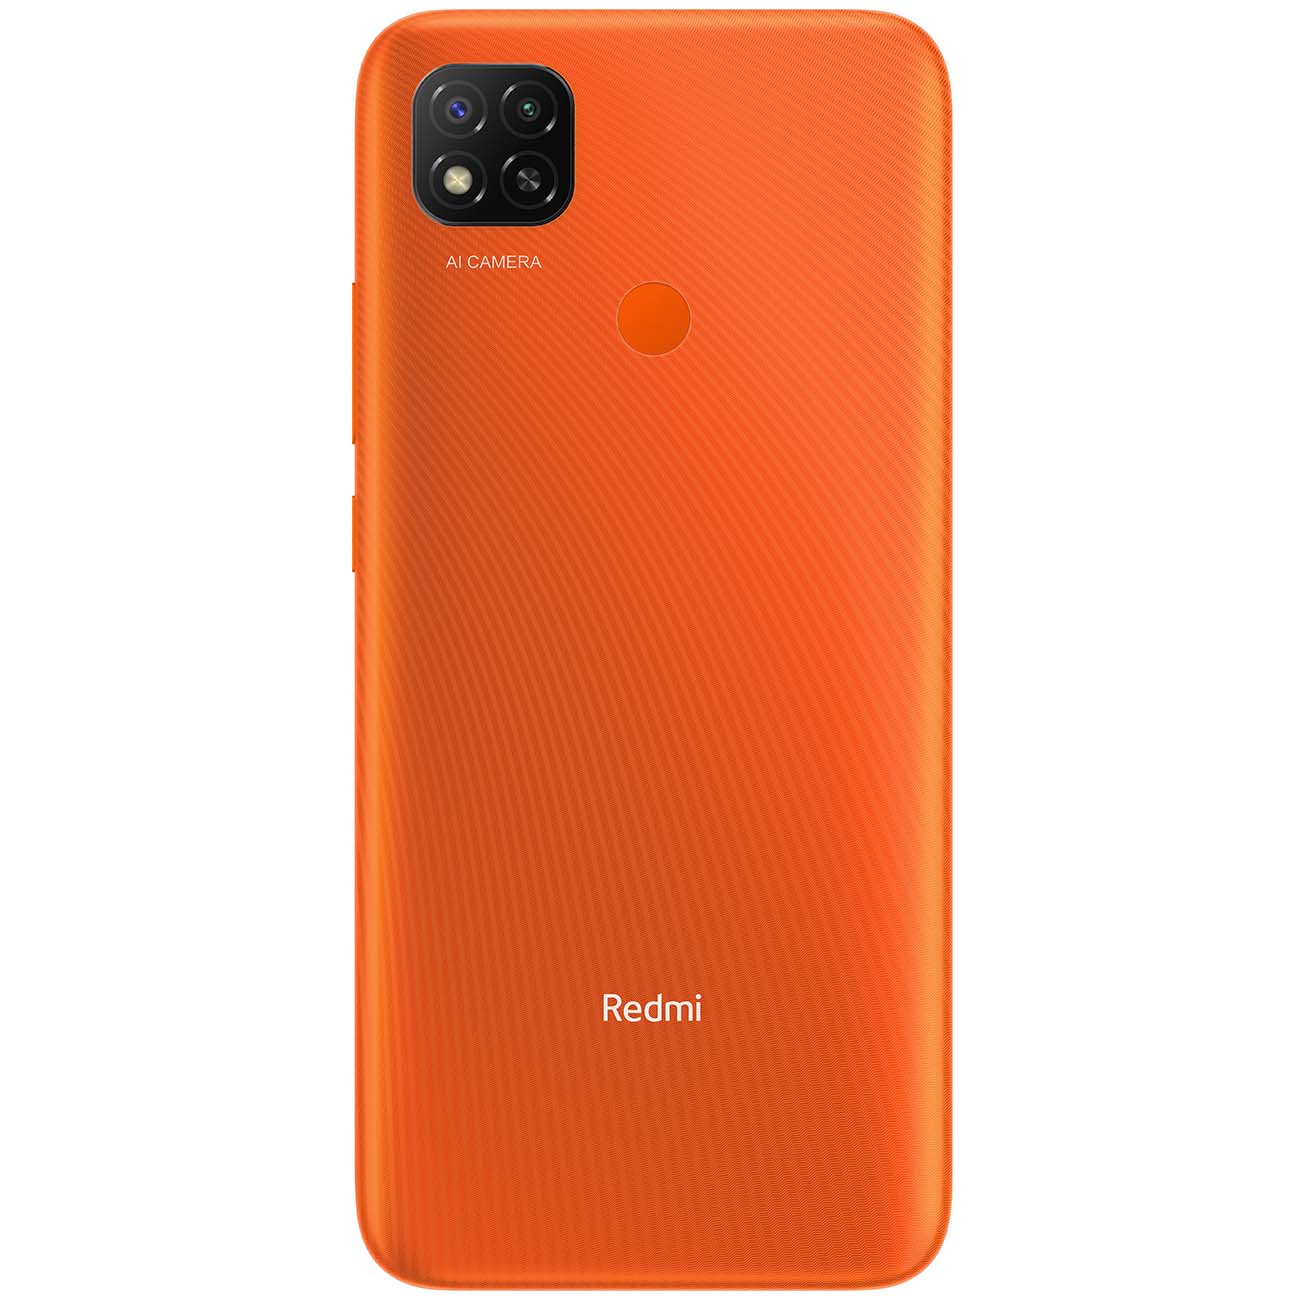 Купить смартфон xiaomi redmi 9c nfc 3+64gb sunrise orange Смартфоны в официальном магазине Apple, Samsung, Xiaomi. iPixel.ru Купить, заказ, кредит, рассрочка, отзывы,  характеристики, цена,  фотографии, в подарок.